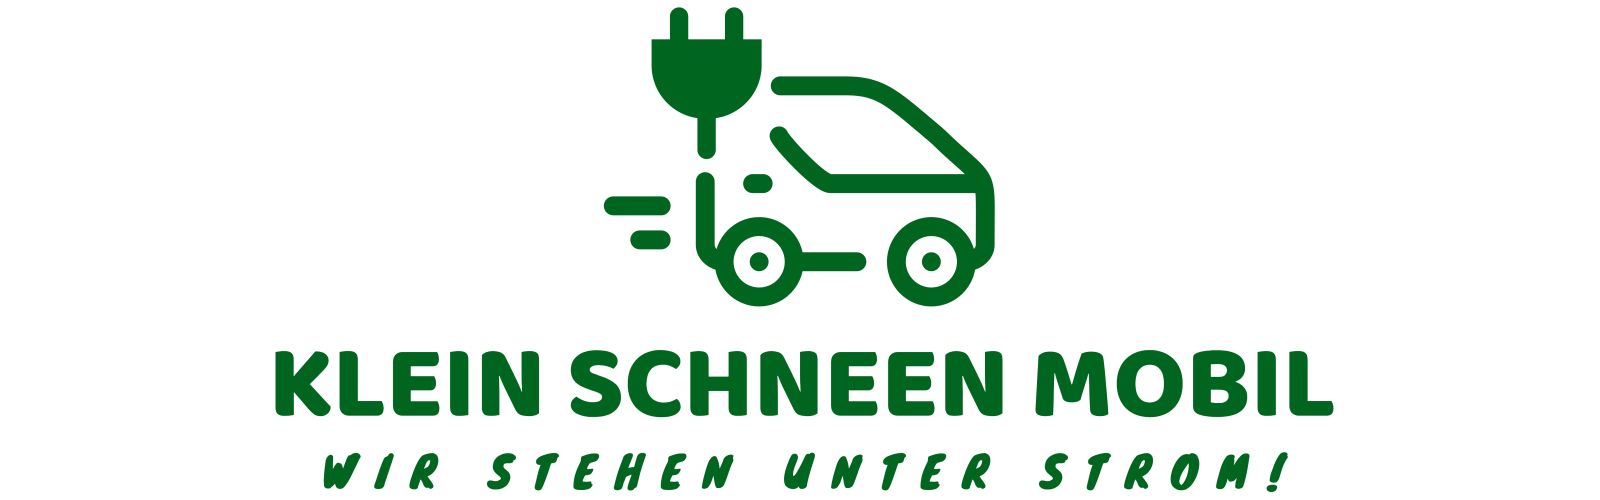 Klein Schneen Mobil Logo